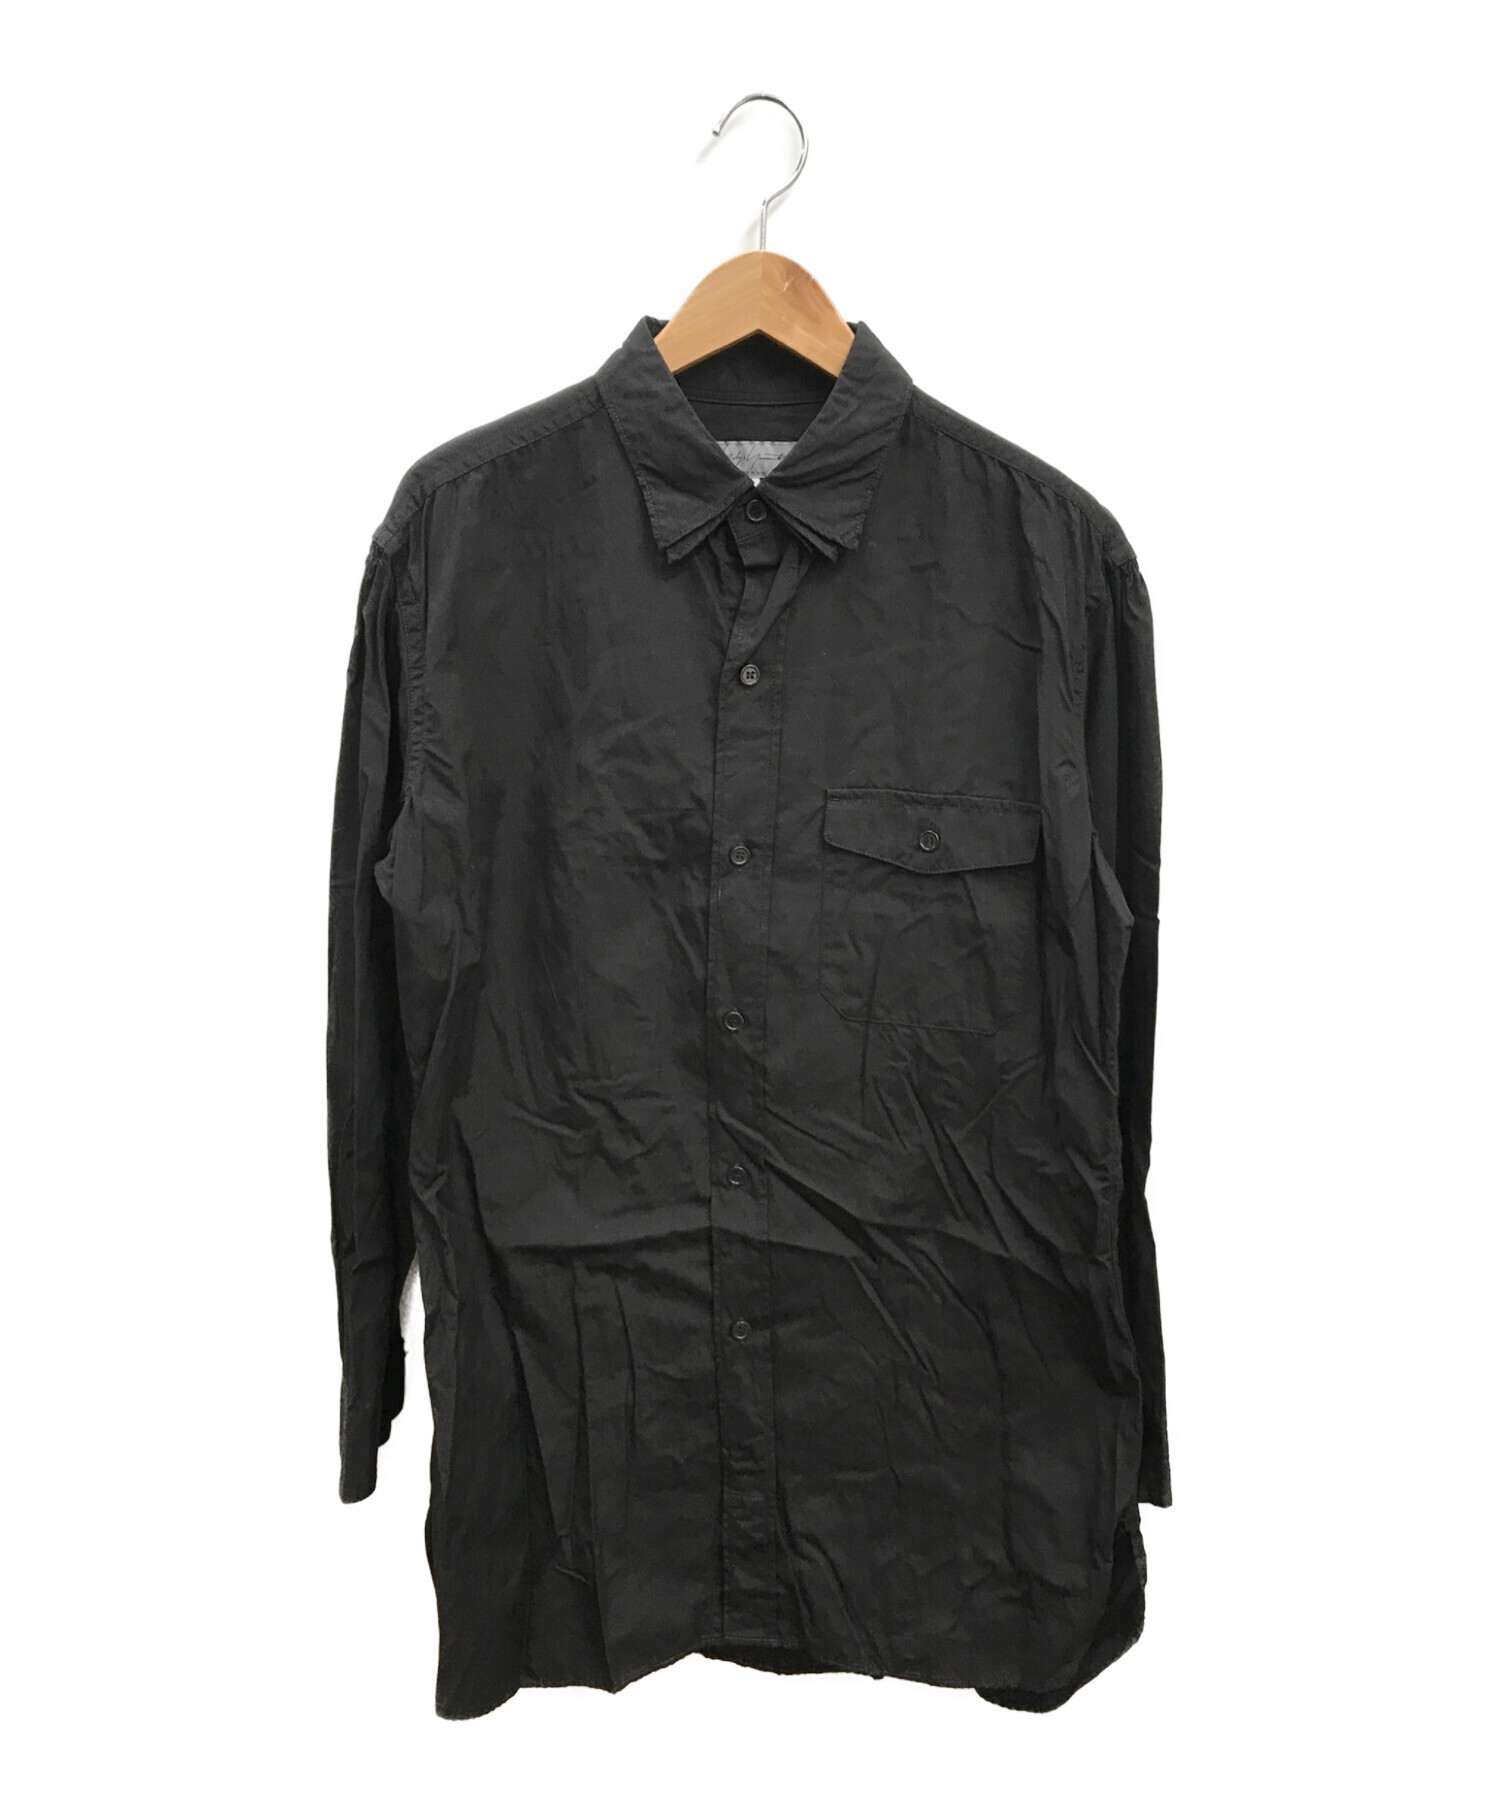 Yohji Yamamoto pour homme (ヨウジヤマモト プールオム) 3カラーロングスリーブシャツ ブラック サイズ:3